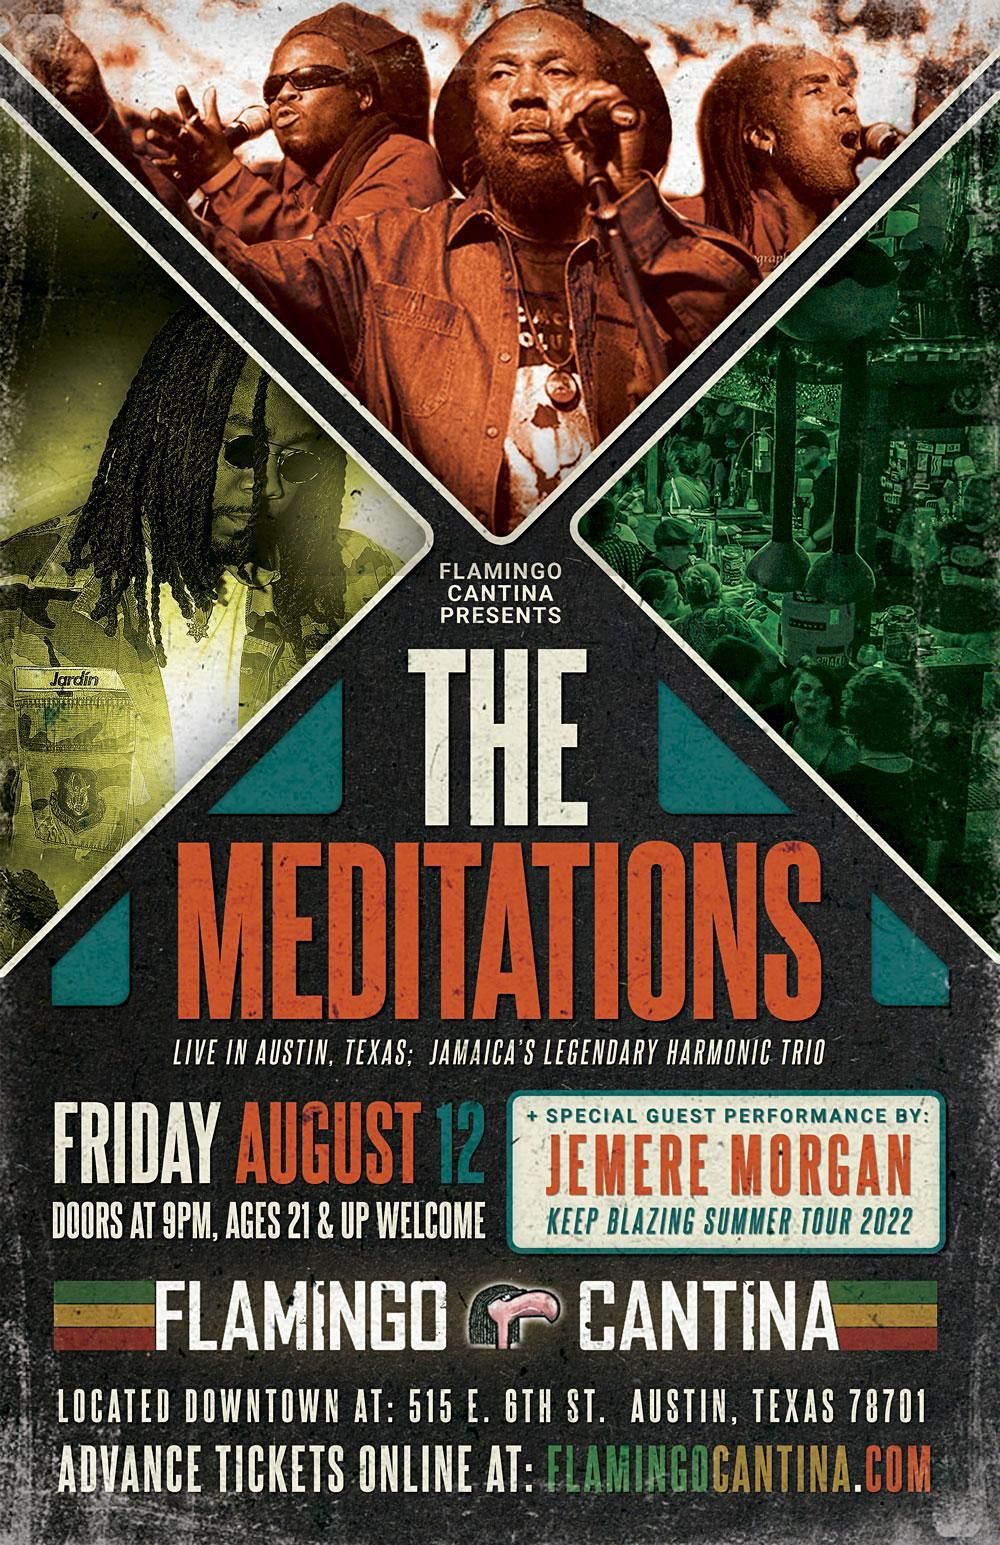 The Meditations + Jemere Morgan